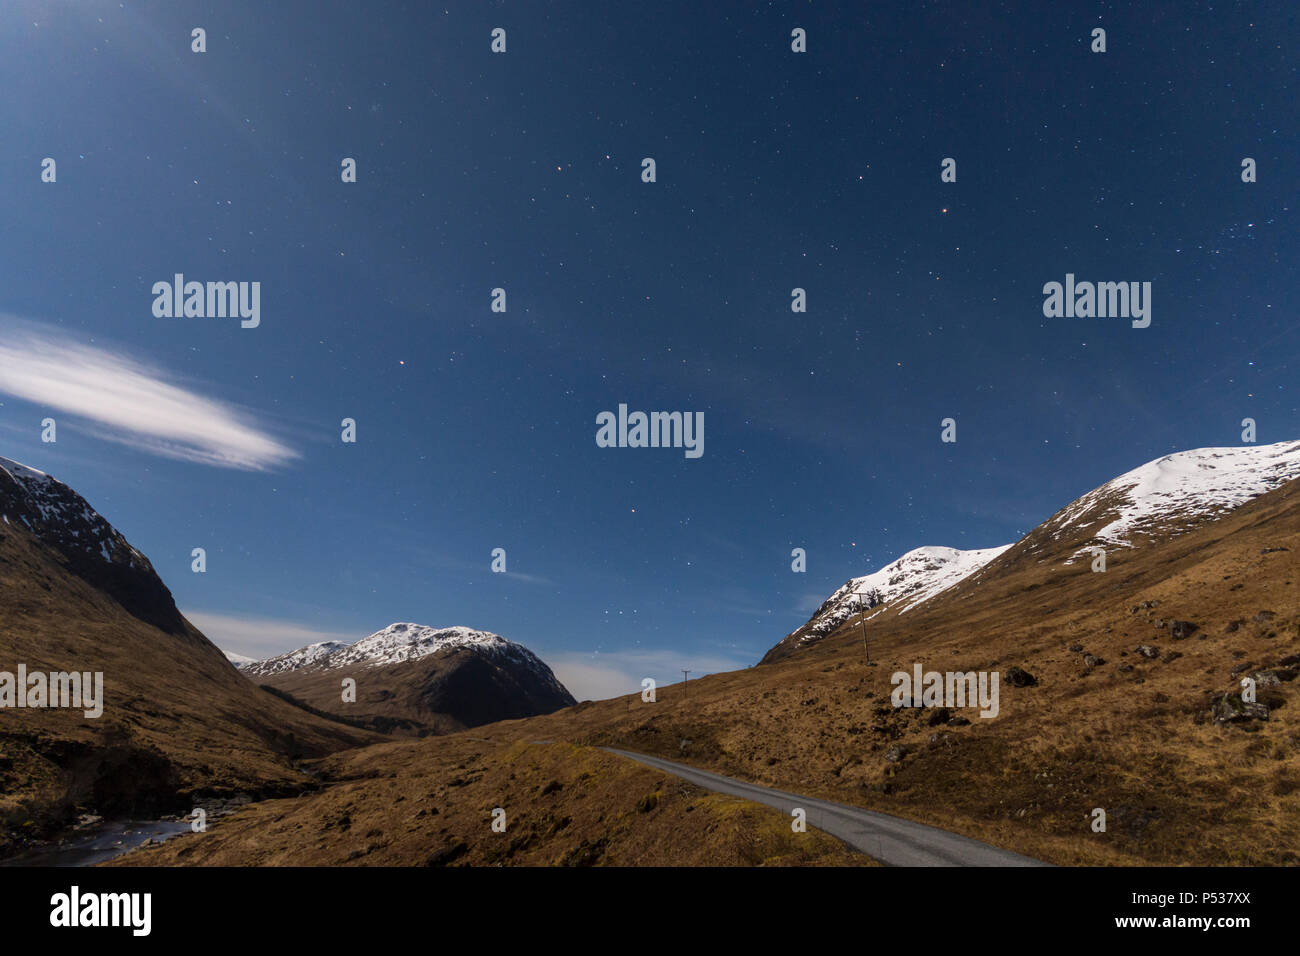 Glen Etive al chiaro di luna. 30 seconda esposizione vicino a mezzanotte. Regione delle Highlands, Scotland, Regno Unito Foto Stock